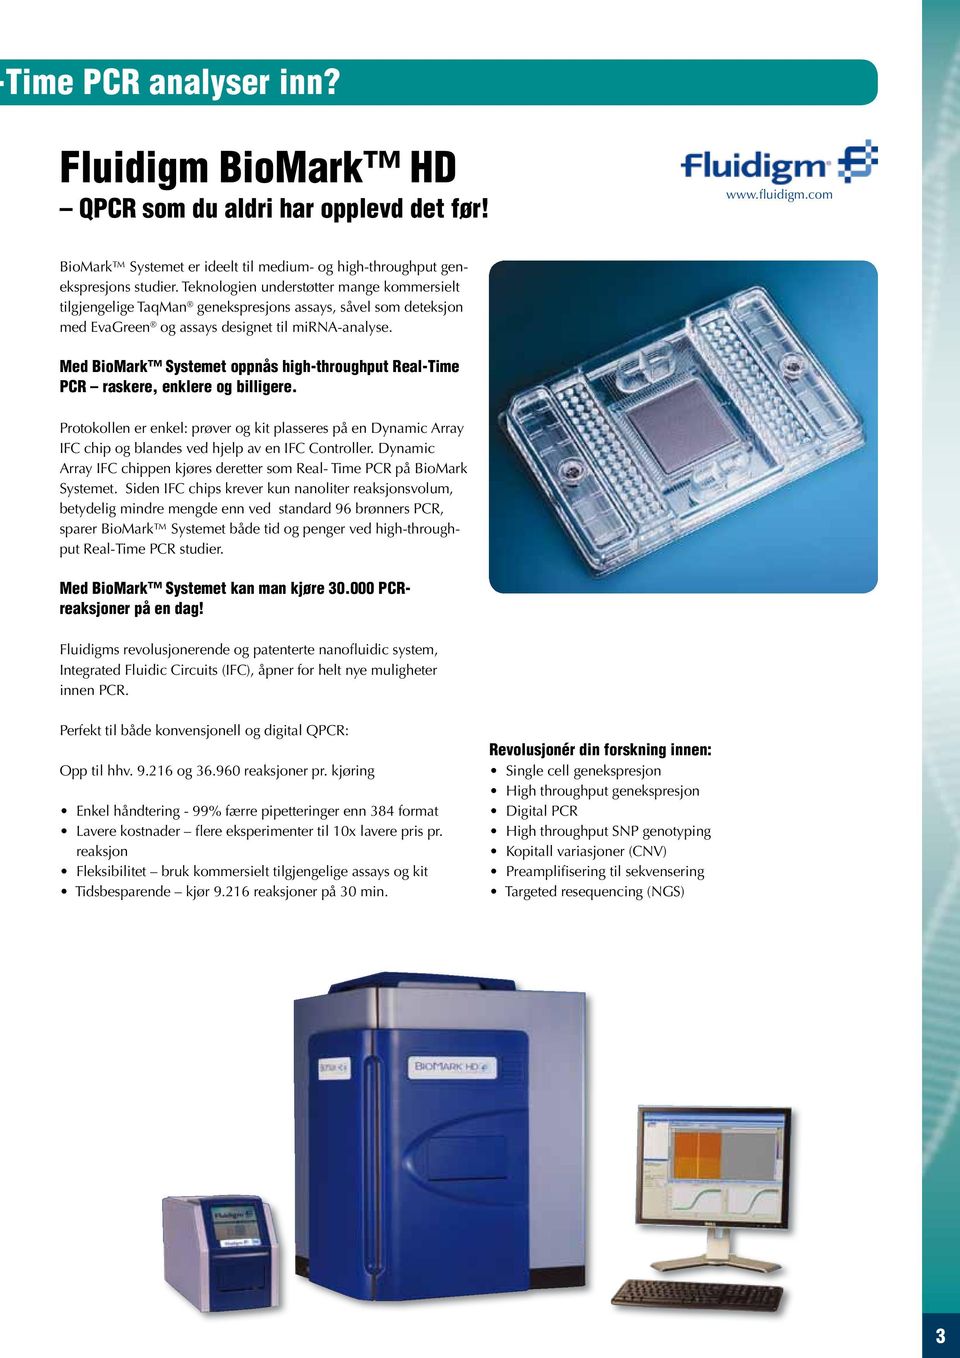 Med BioMark Systemet oppnås high-throughput Real-Time PCR raskere, enklere og billigere.